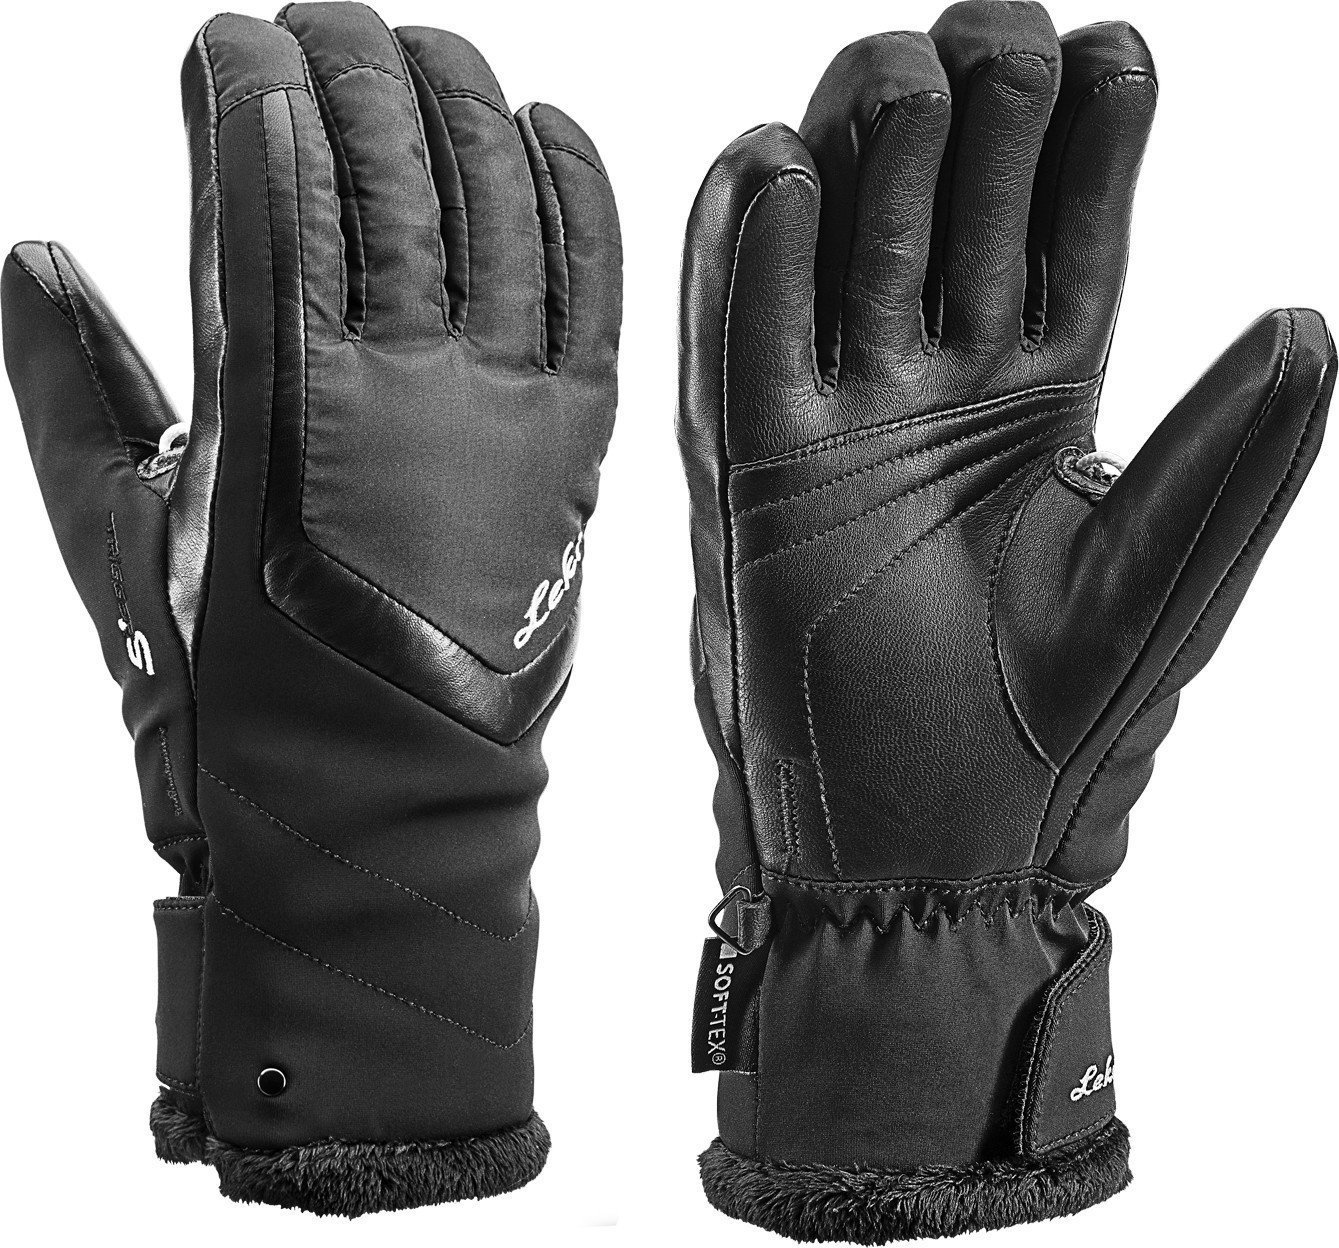 Skijaške rukavice Leki Stella S Black 6,5 Skijaške rukavice